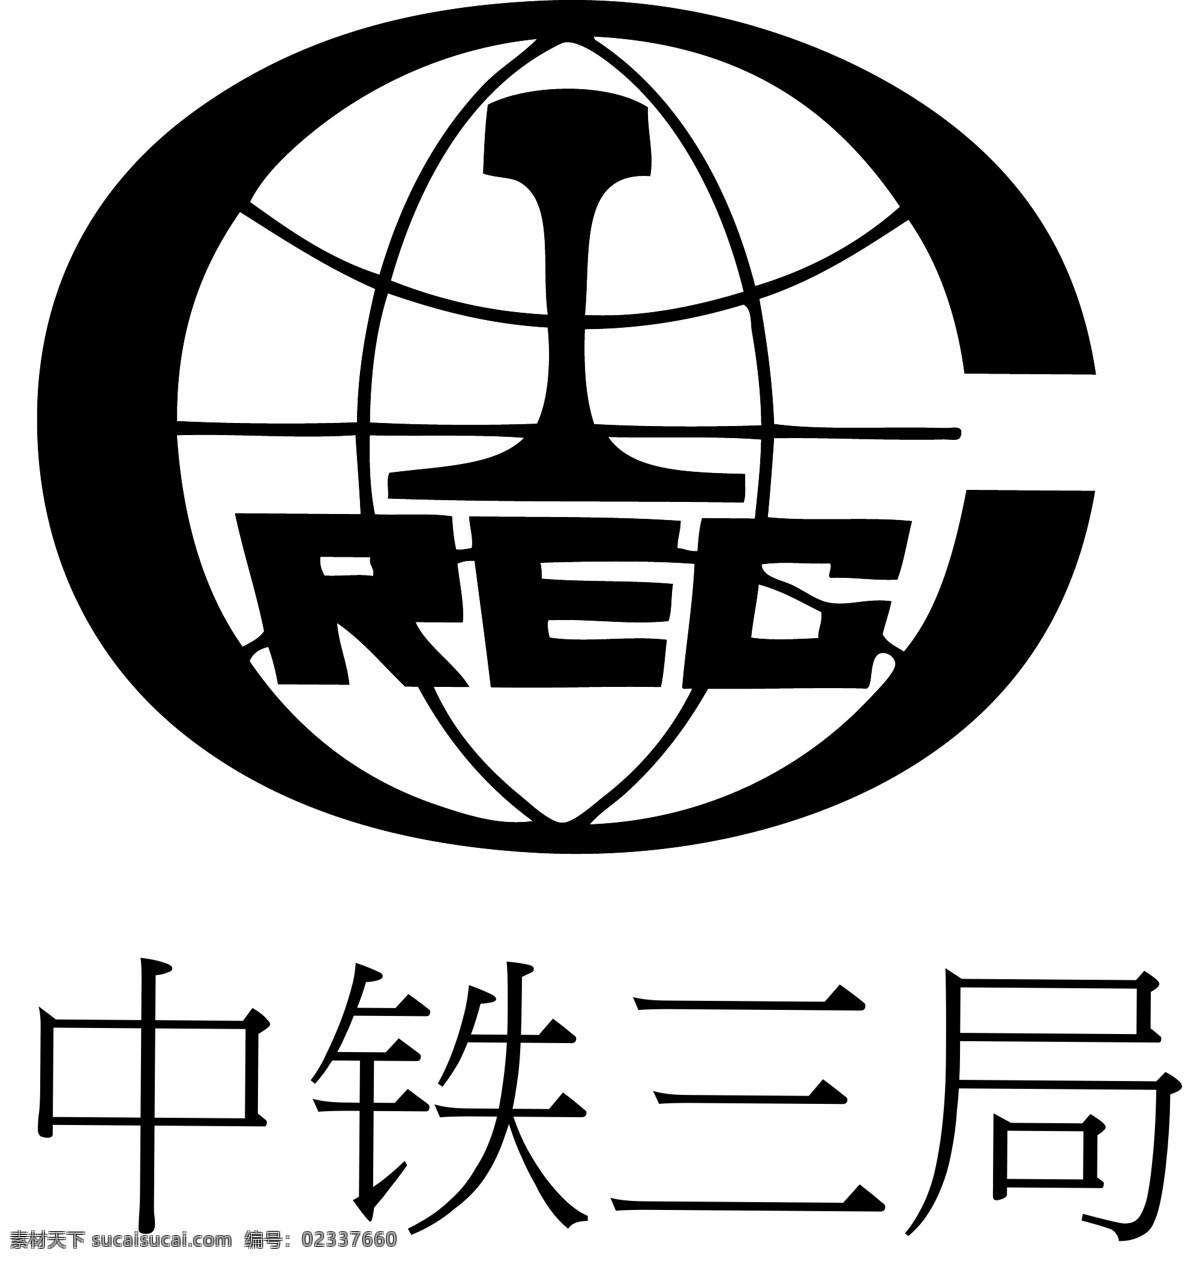 中铁集团 中铁三局 rec 中铁 三 局 三局logo